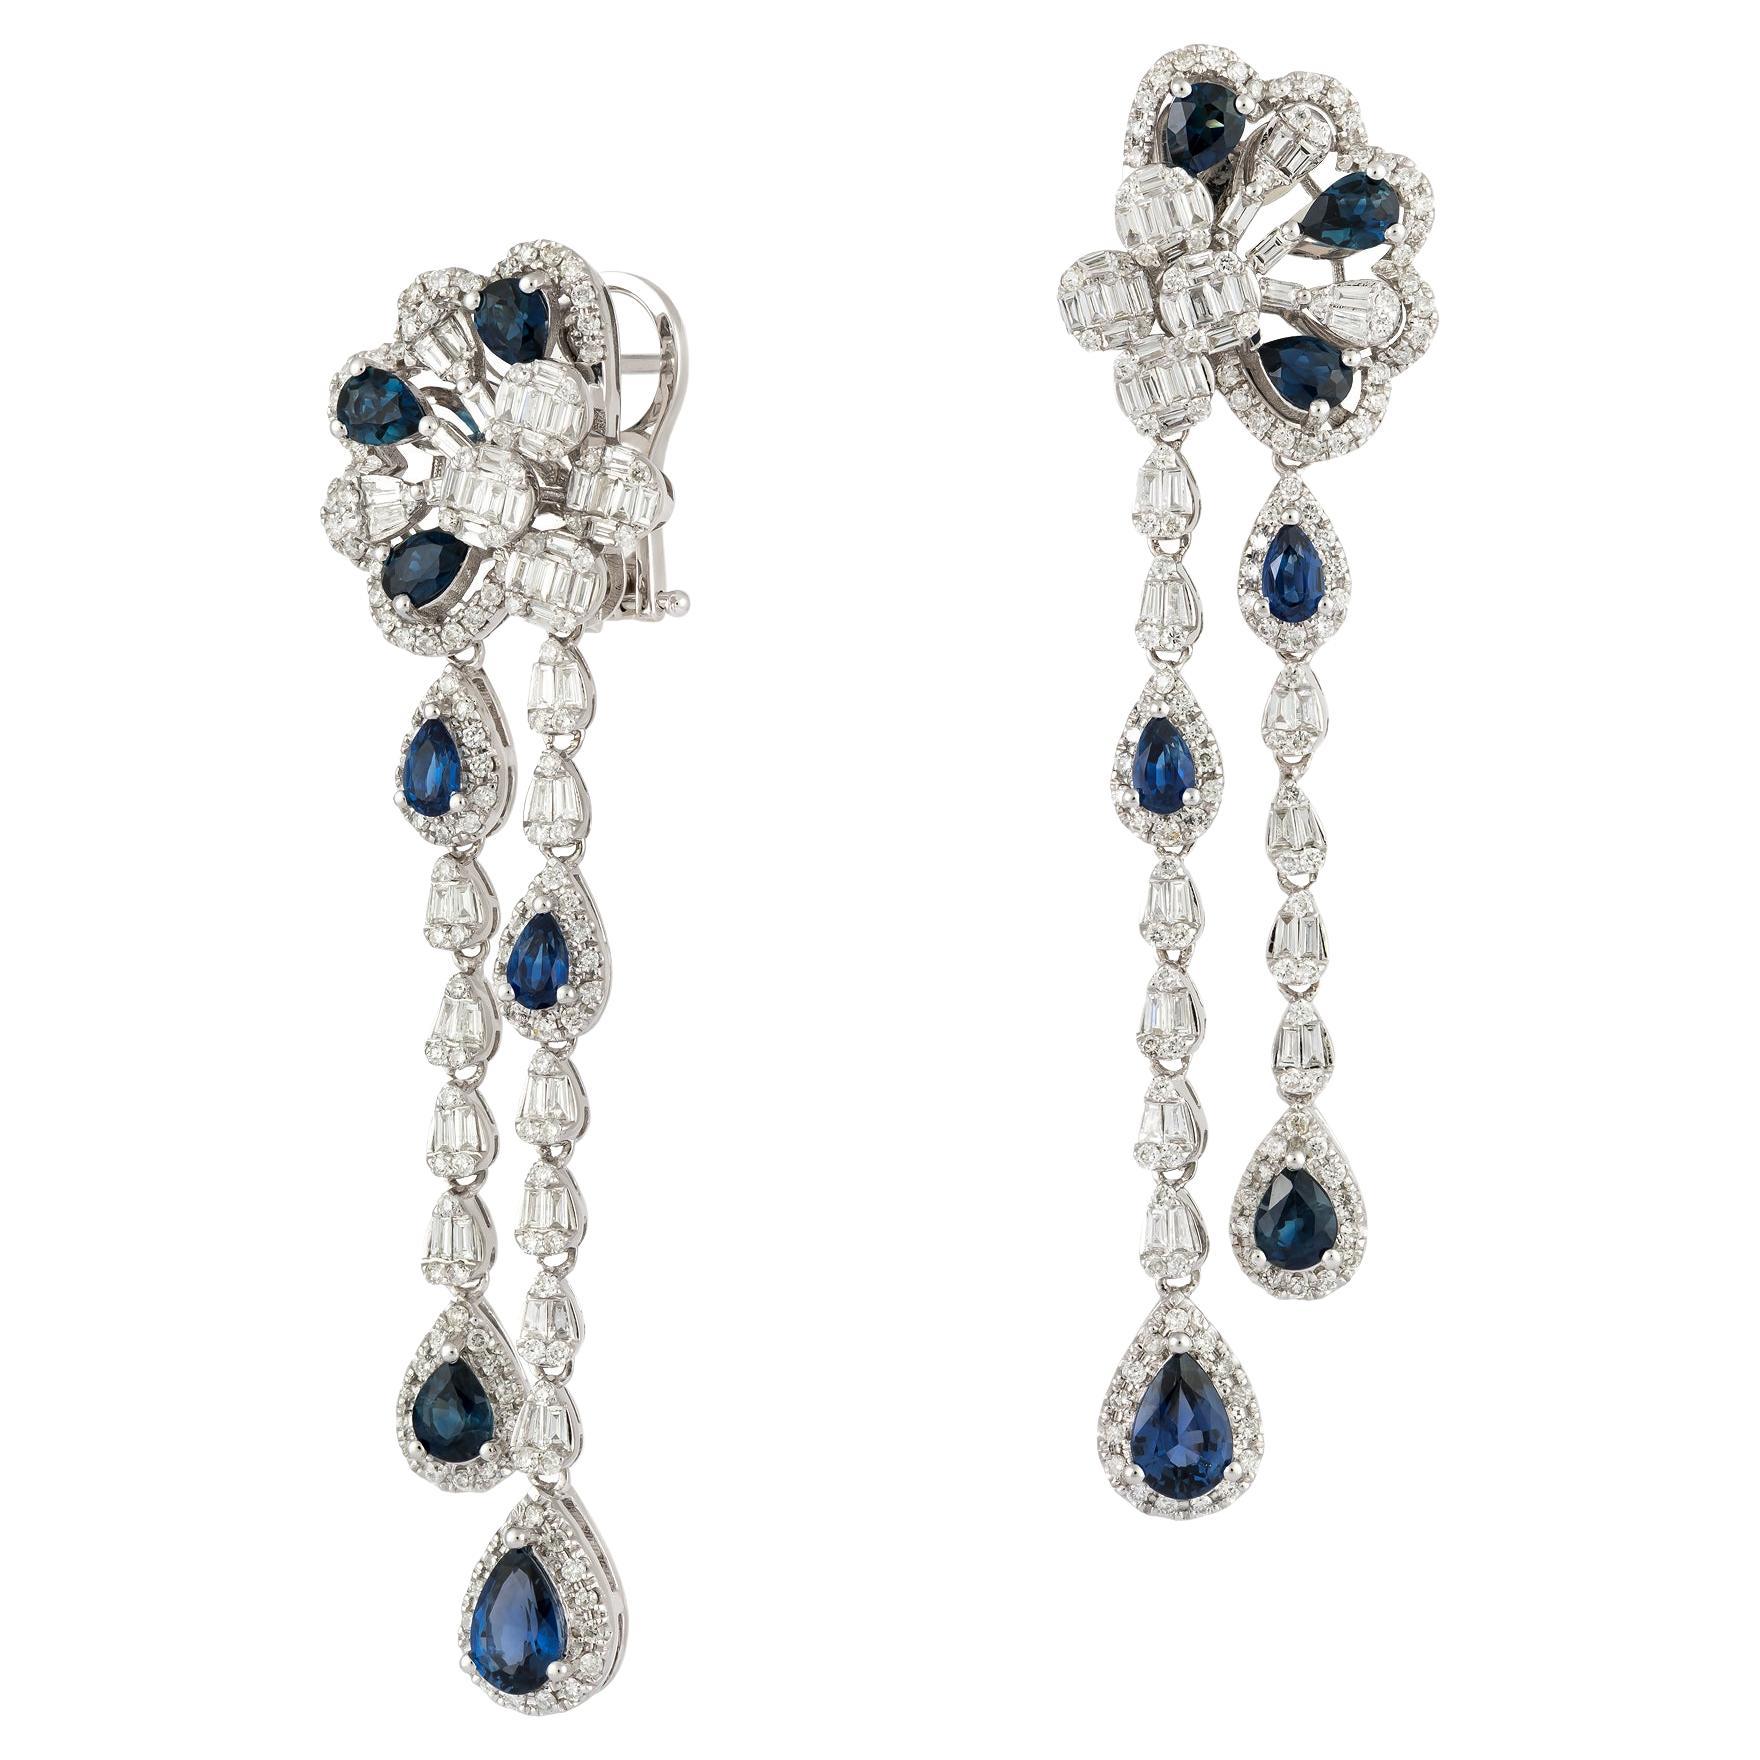 Evening Dangle White Gold 18K Blue Sapphire Earrings Diamond for Her